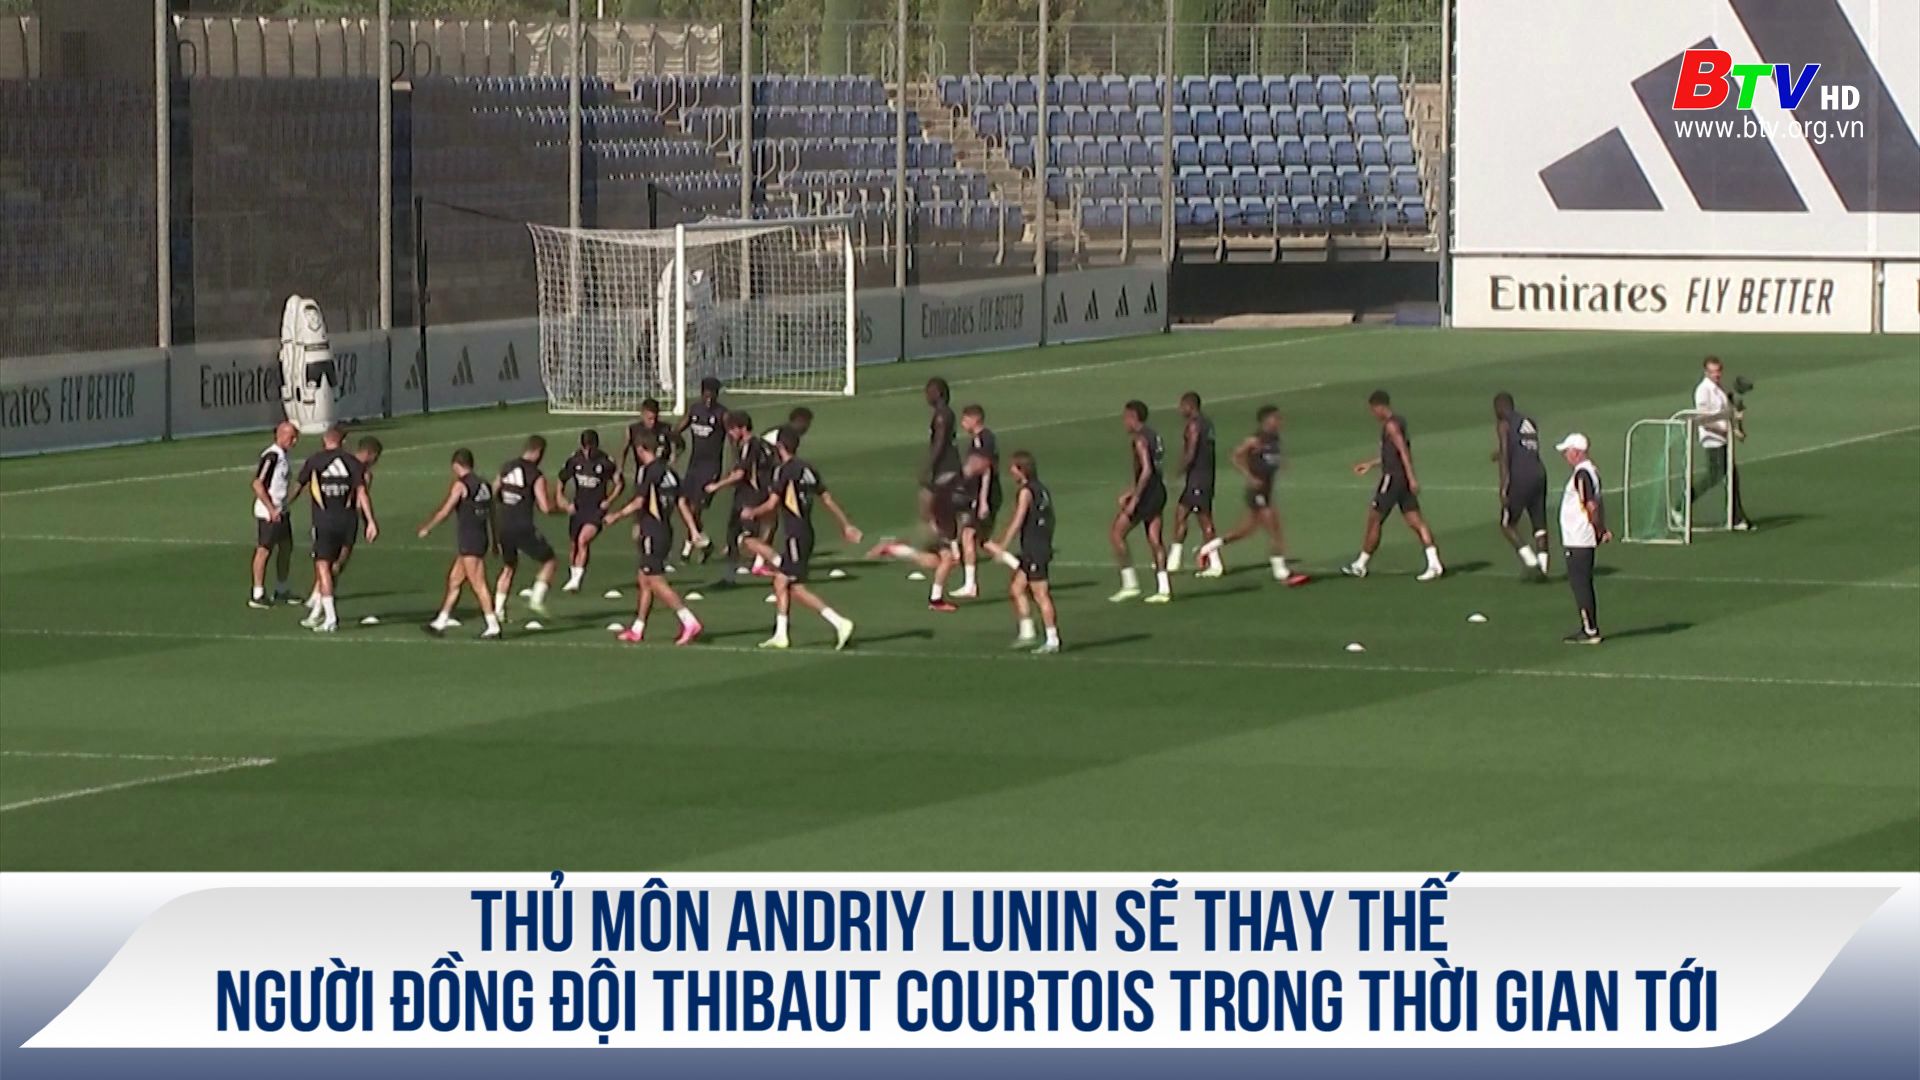 Thủ môn Andriy Lunin sẽ thay thế người đồng đội Thibaut Courtois trong thời gian tới